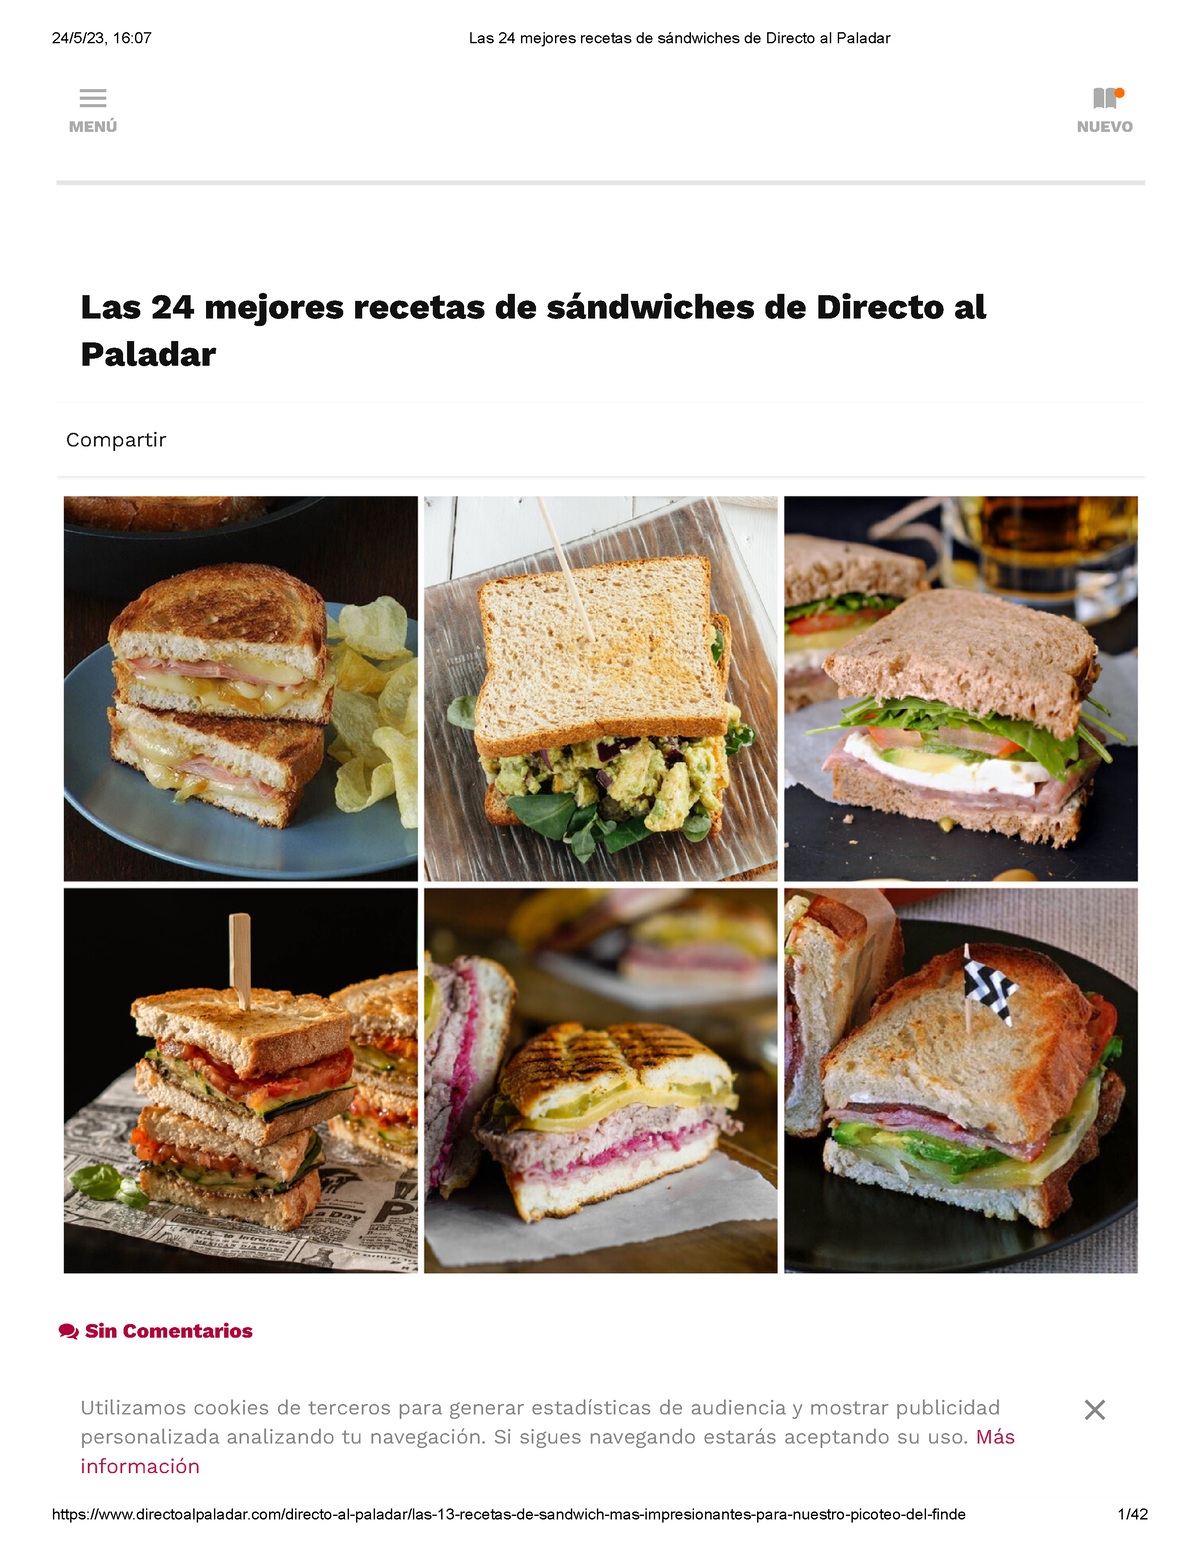 Las 24 mejores recetas de sándwiches de Directo al Paladar - Las 24 mejores  recetas de sándwiches de - Studocu